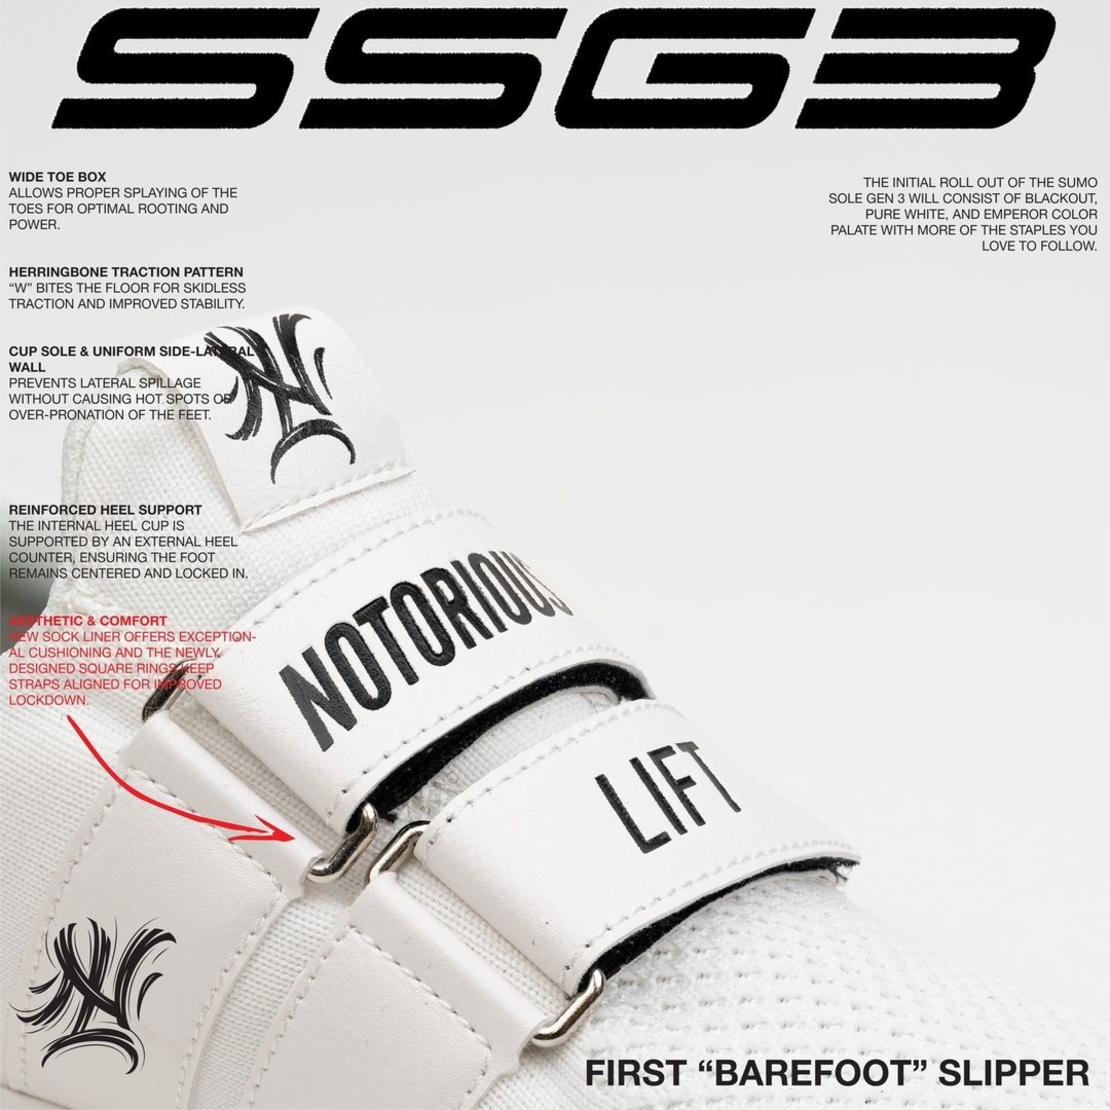 נעלי פאוורליפטינג NOTORIOUS LIFT SSG3 - PURE WHITE